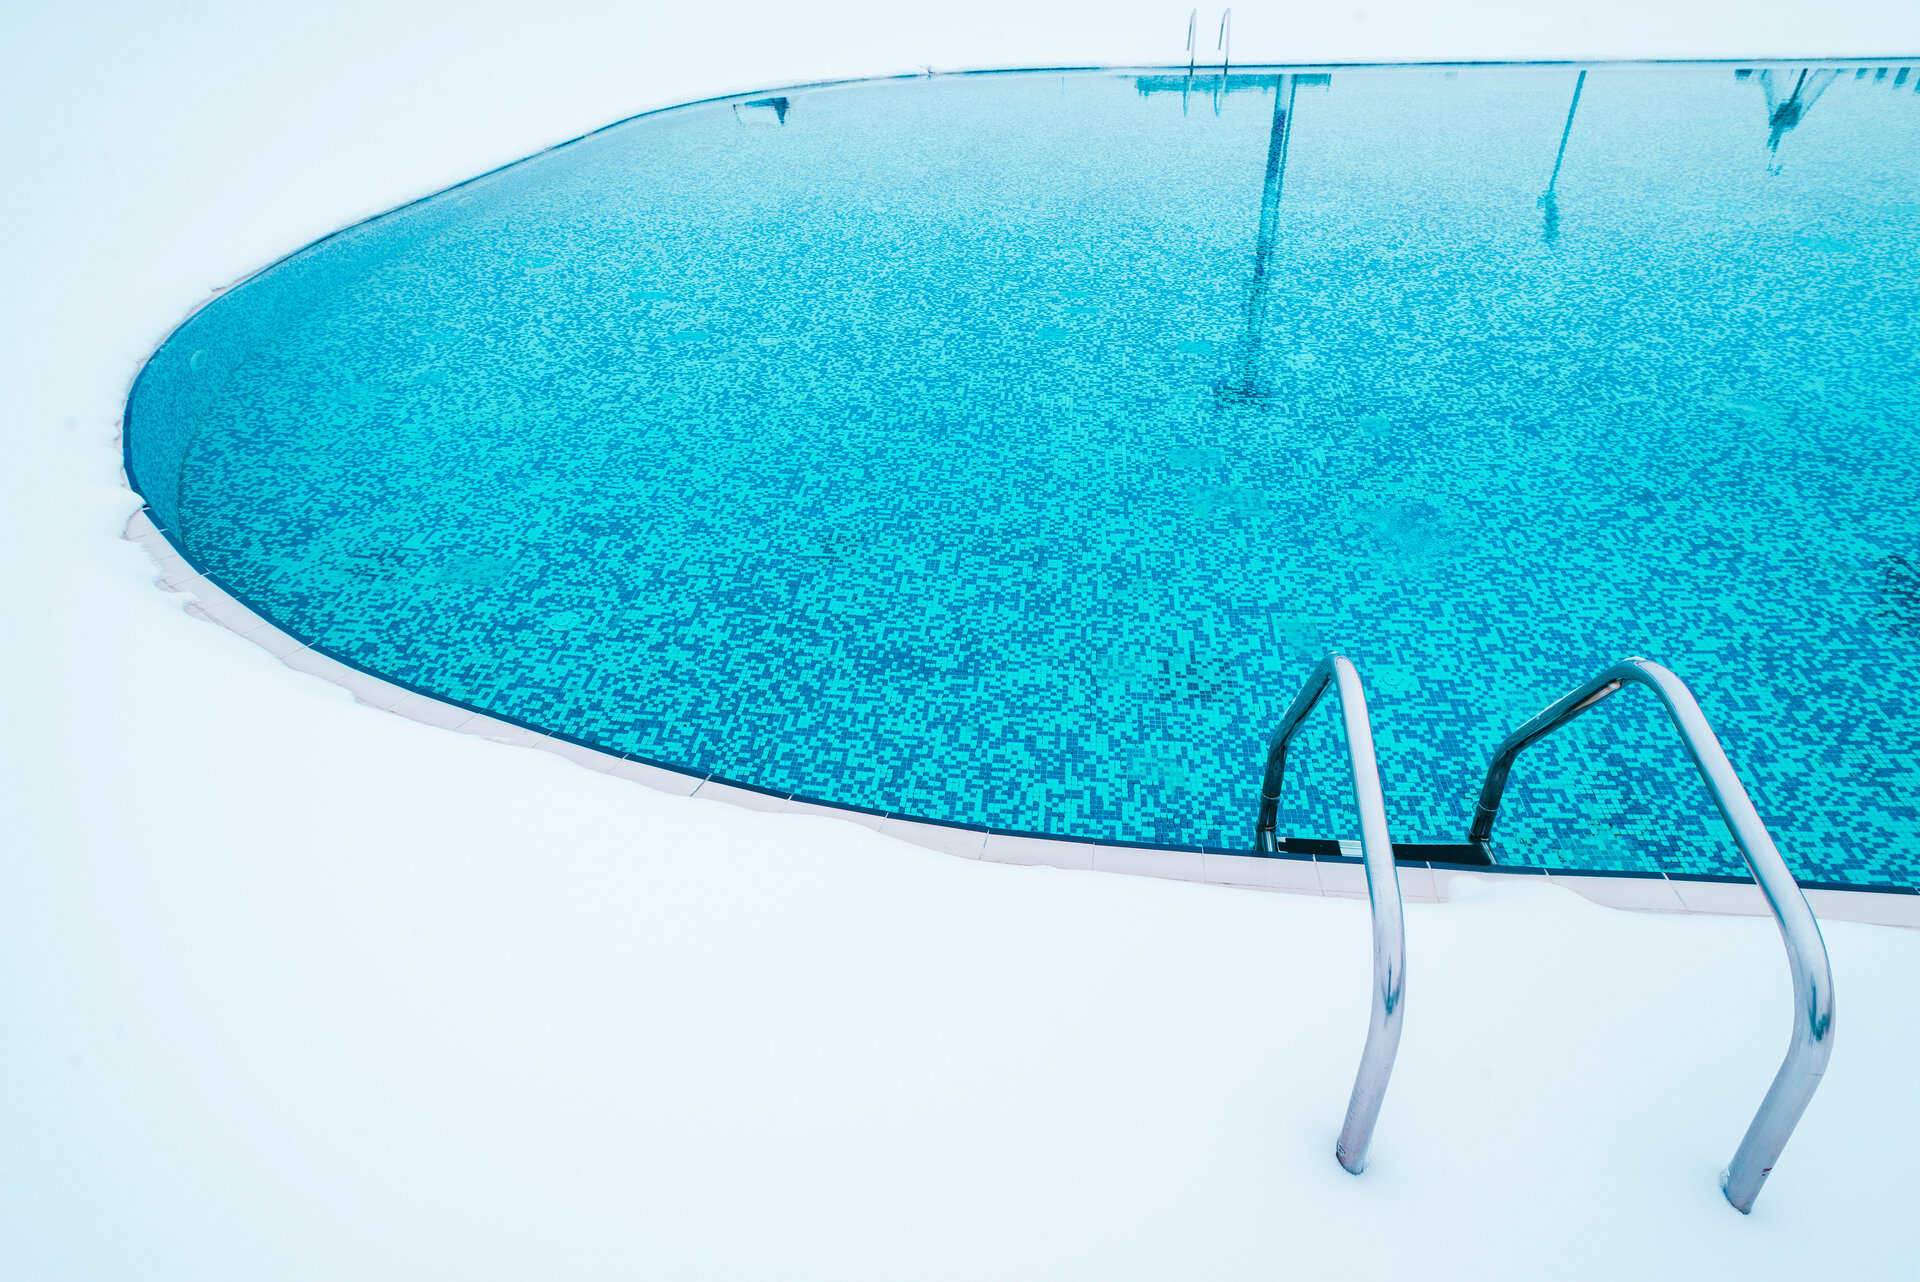 Schwimmen im warmen Wasser: Wie Sie mit einer Pool Wärmepumpe auch an kühlen Tagen den Pool genießen können